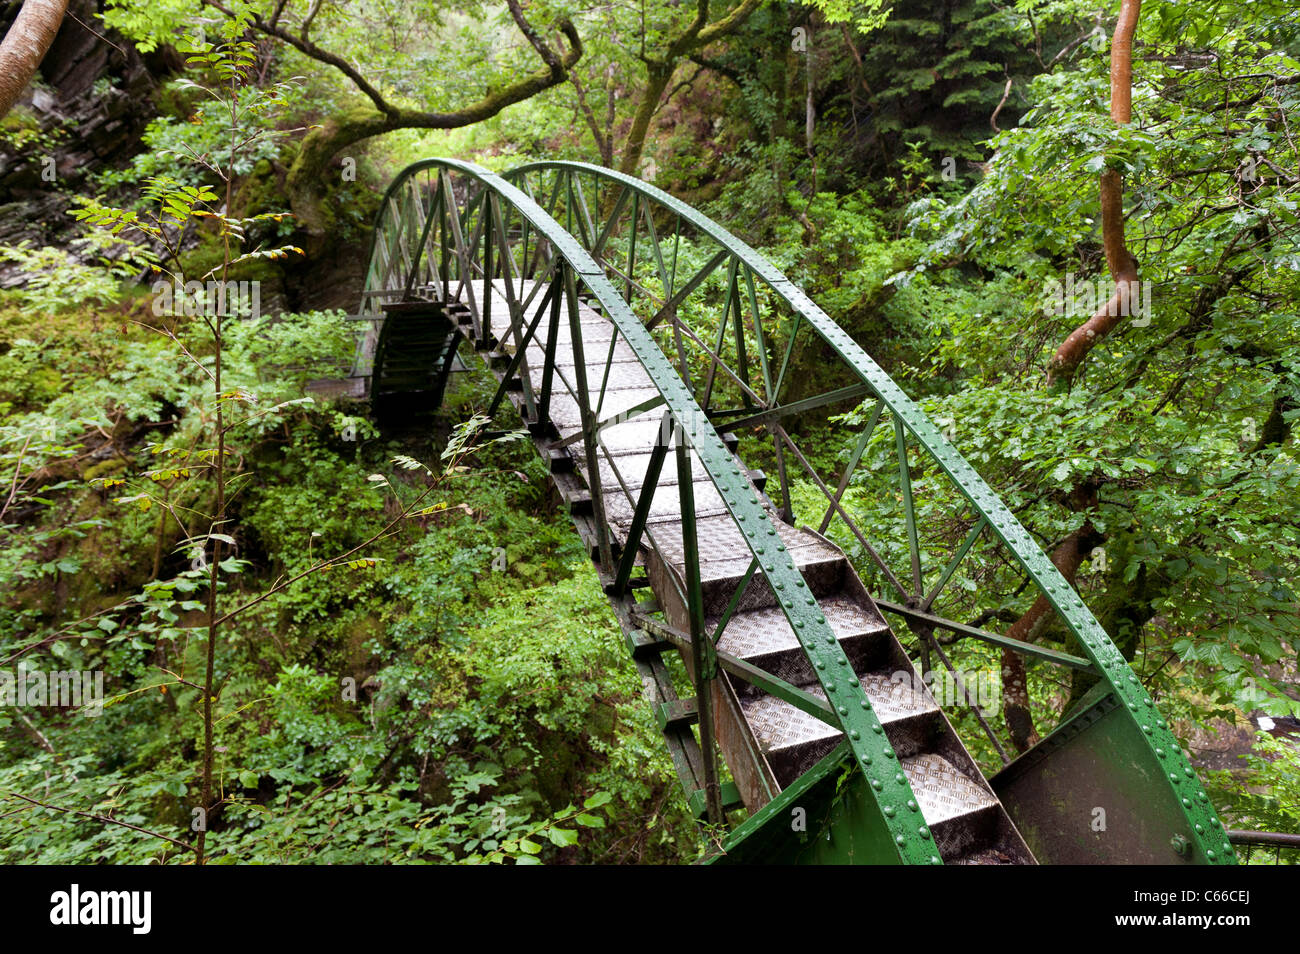 Metall-Bogenbrücke bei Teufelsbrücke Touristenattraktion - Inspiration für Wordsworth für "Auf Torrent bei Teufelsbrücke" Stockfoto